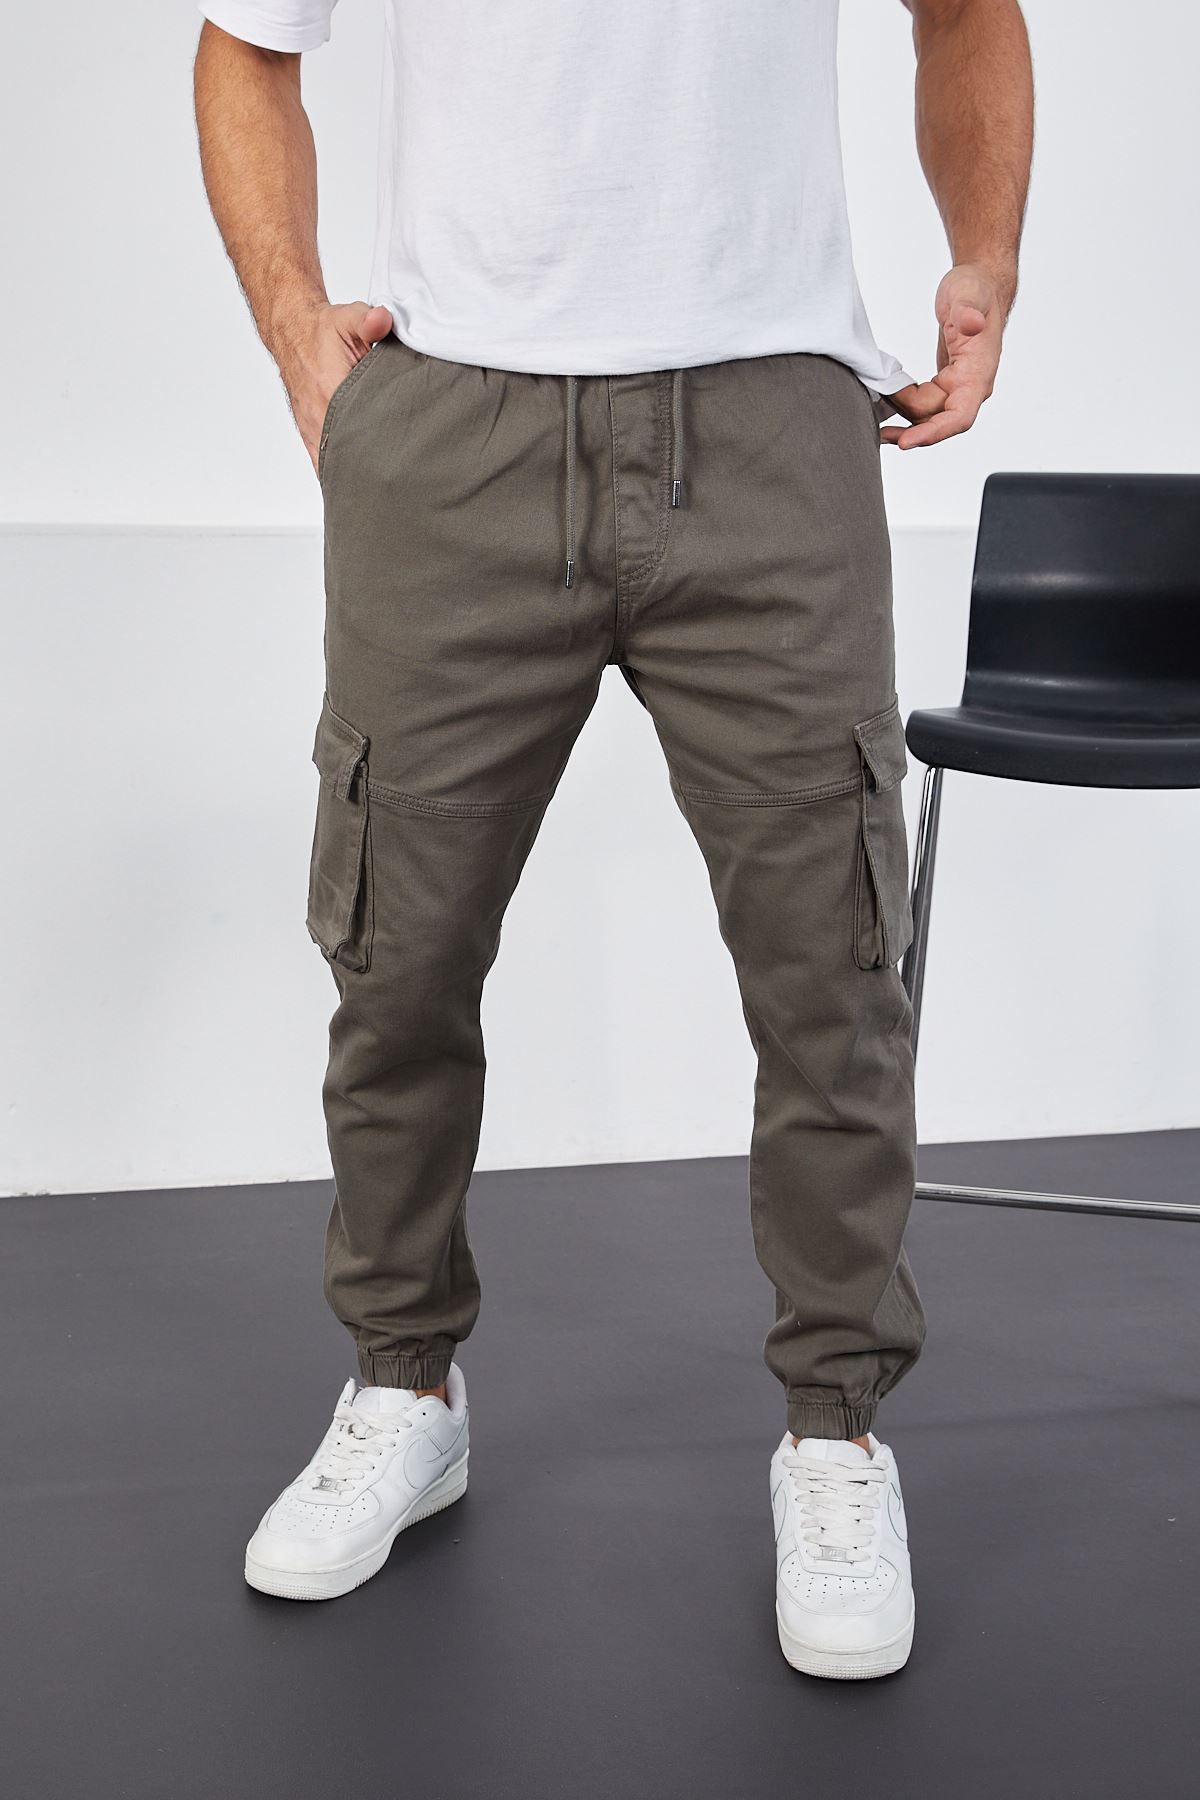 LTC Jeans Erkek Mint Paçası Lastikli Jogger Kargo Cep Pantolon